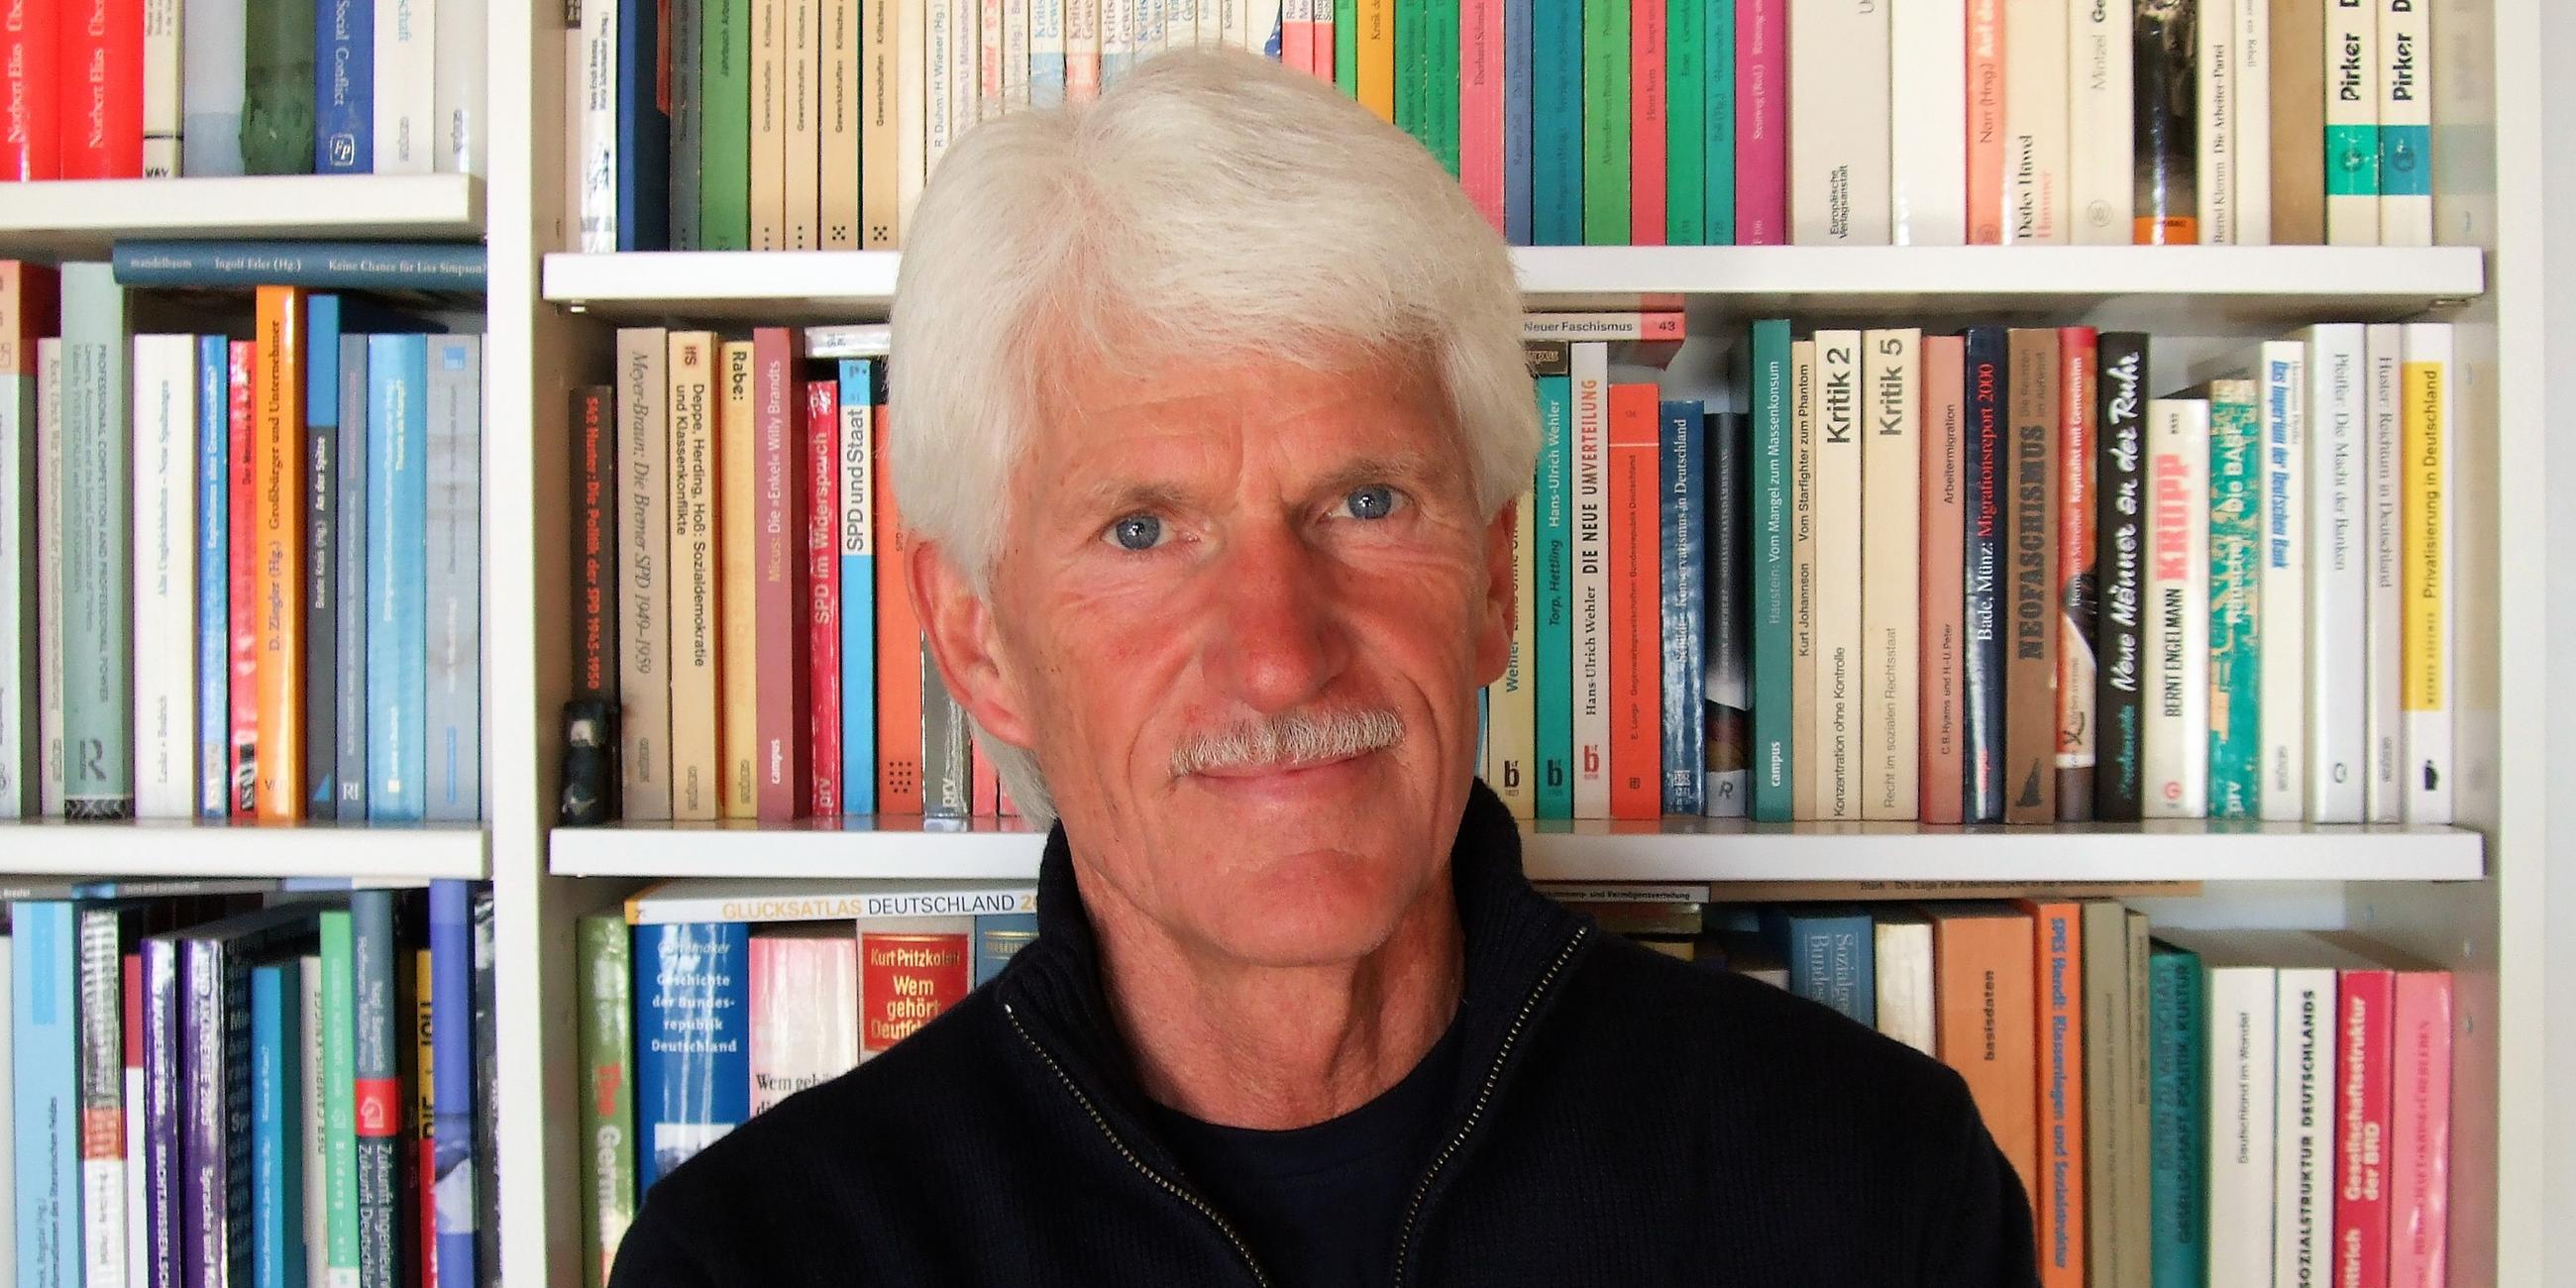 Der Soziologe Michael Hartmann vor einem Bücherregal.